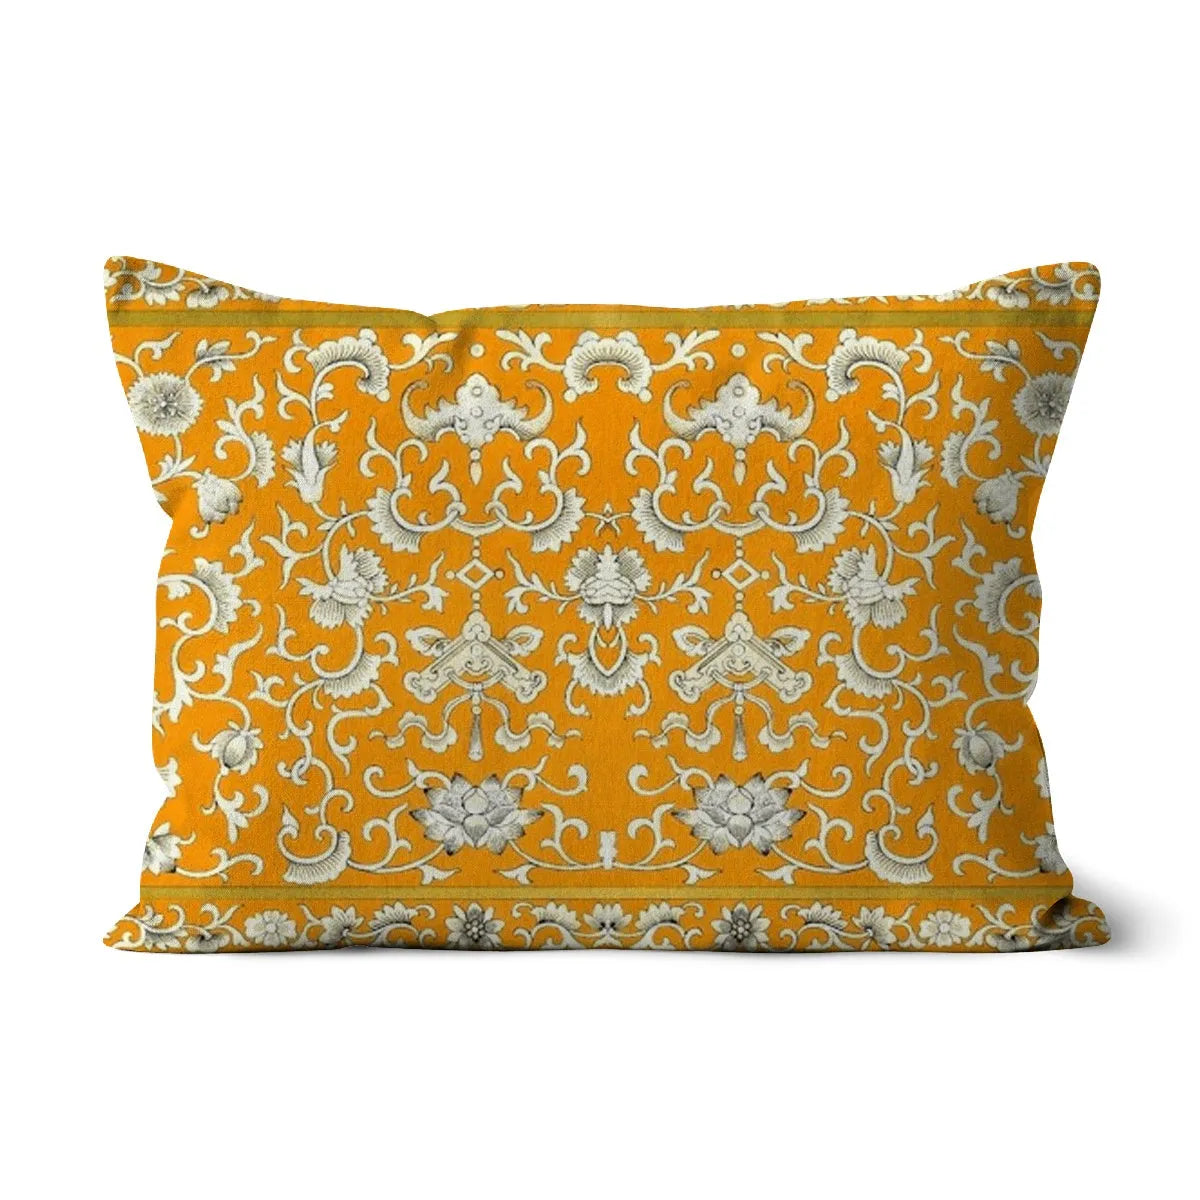 Tangerine Dream Cushion - Decorative Throw Pillow - Canvas / 19x13 - Pillows -